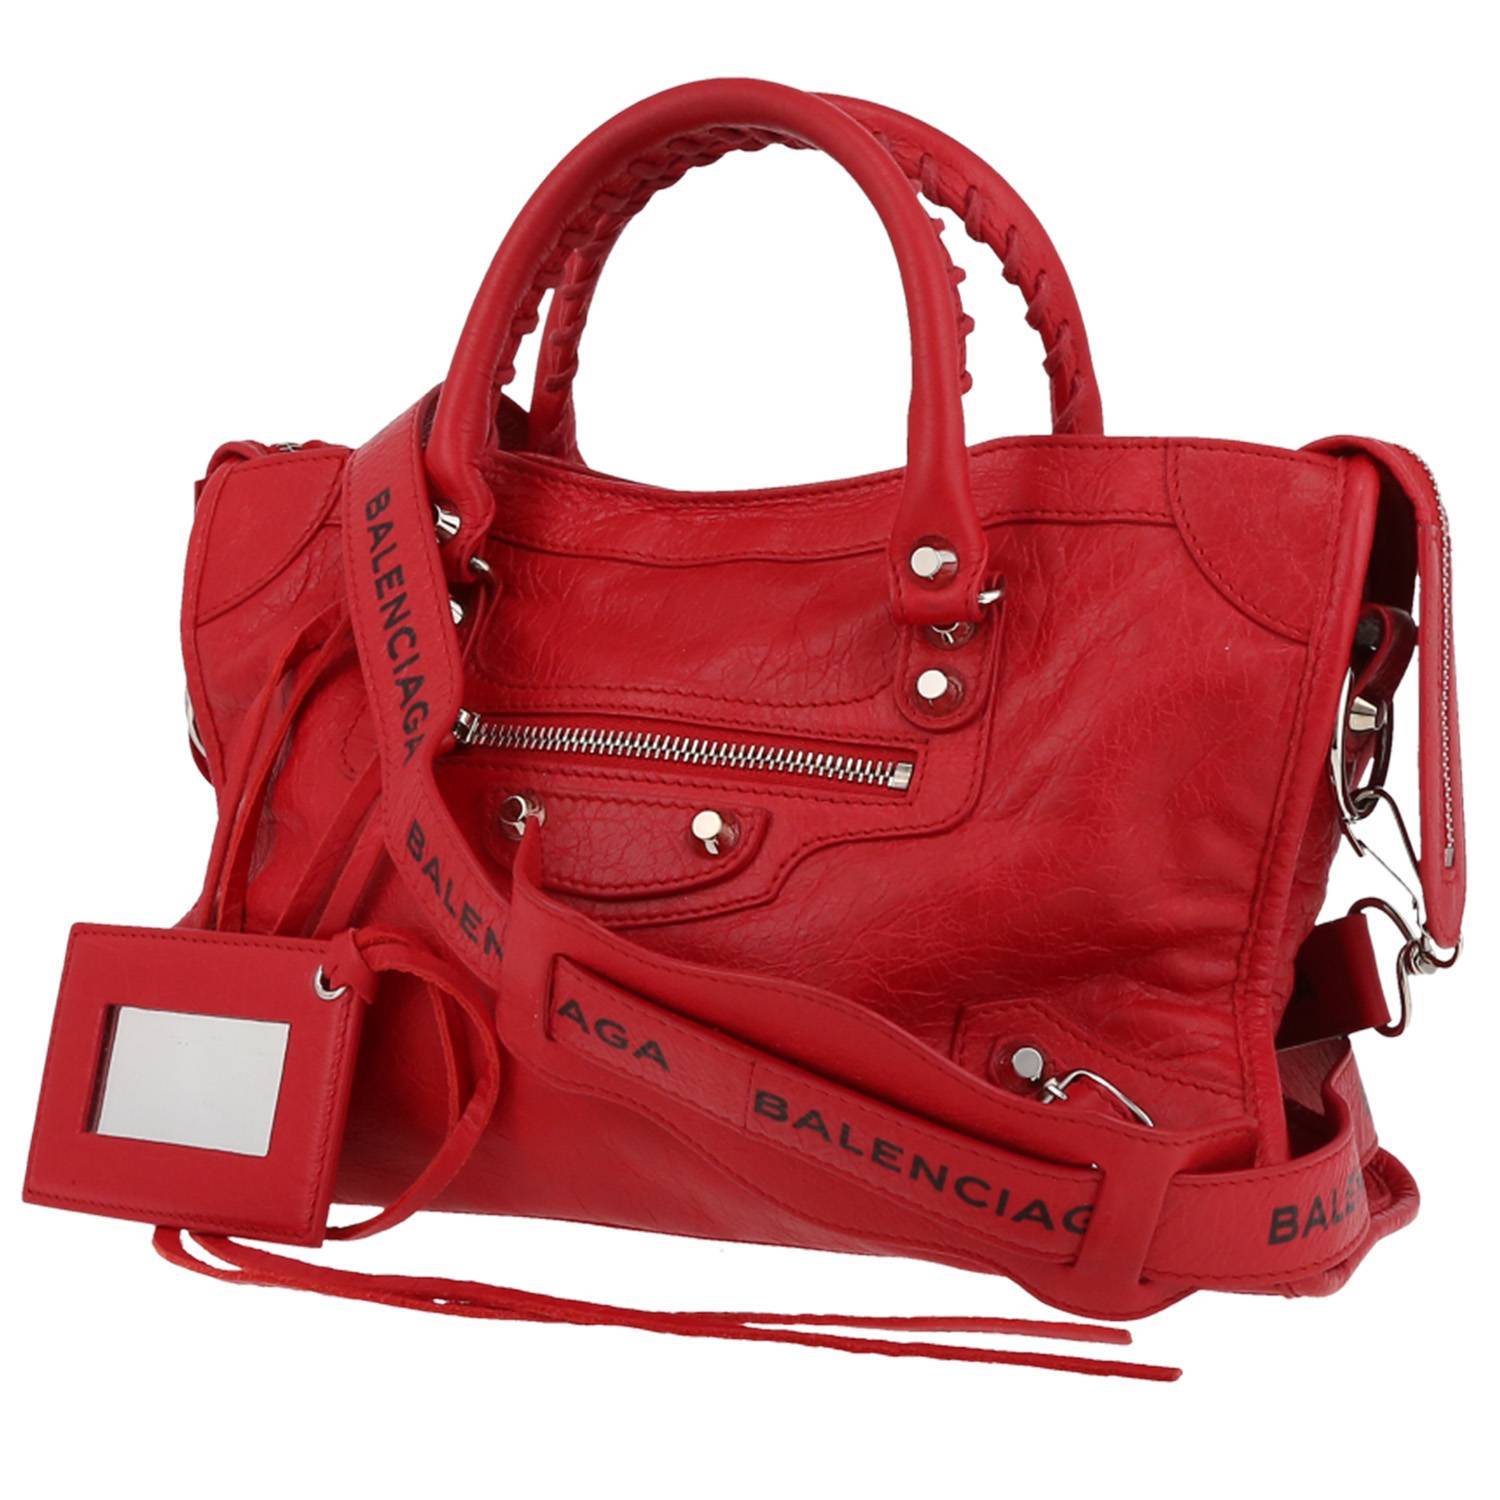 Balenciaga City Handbag 402599 | Collector Square